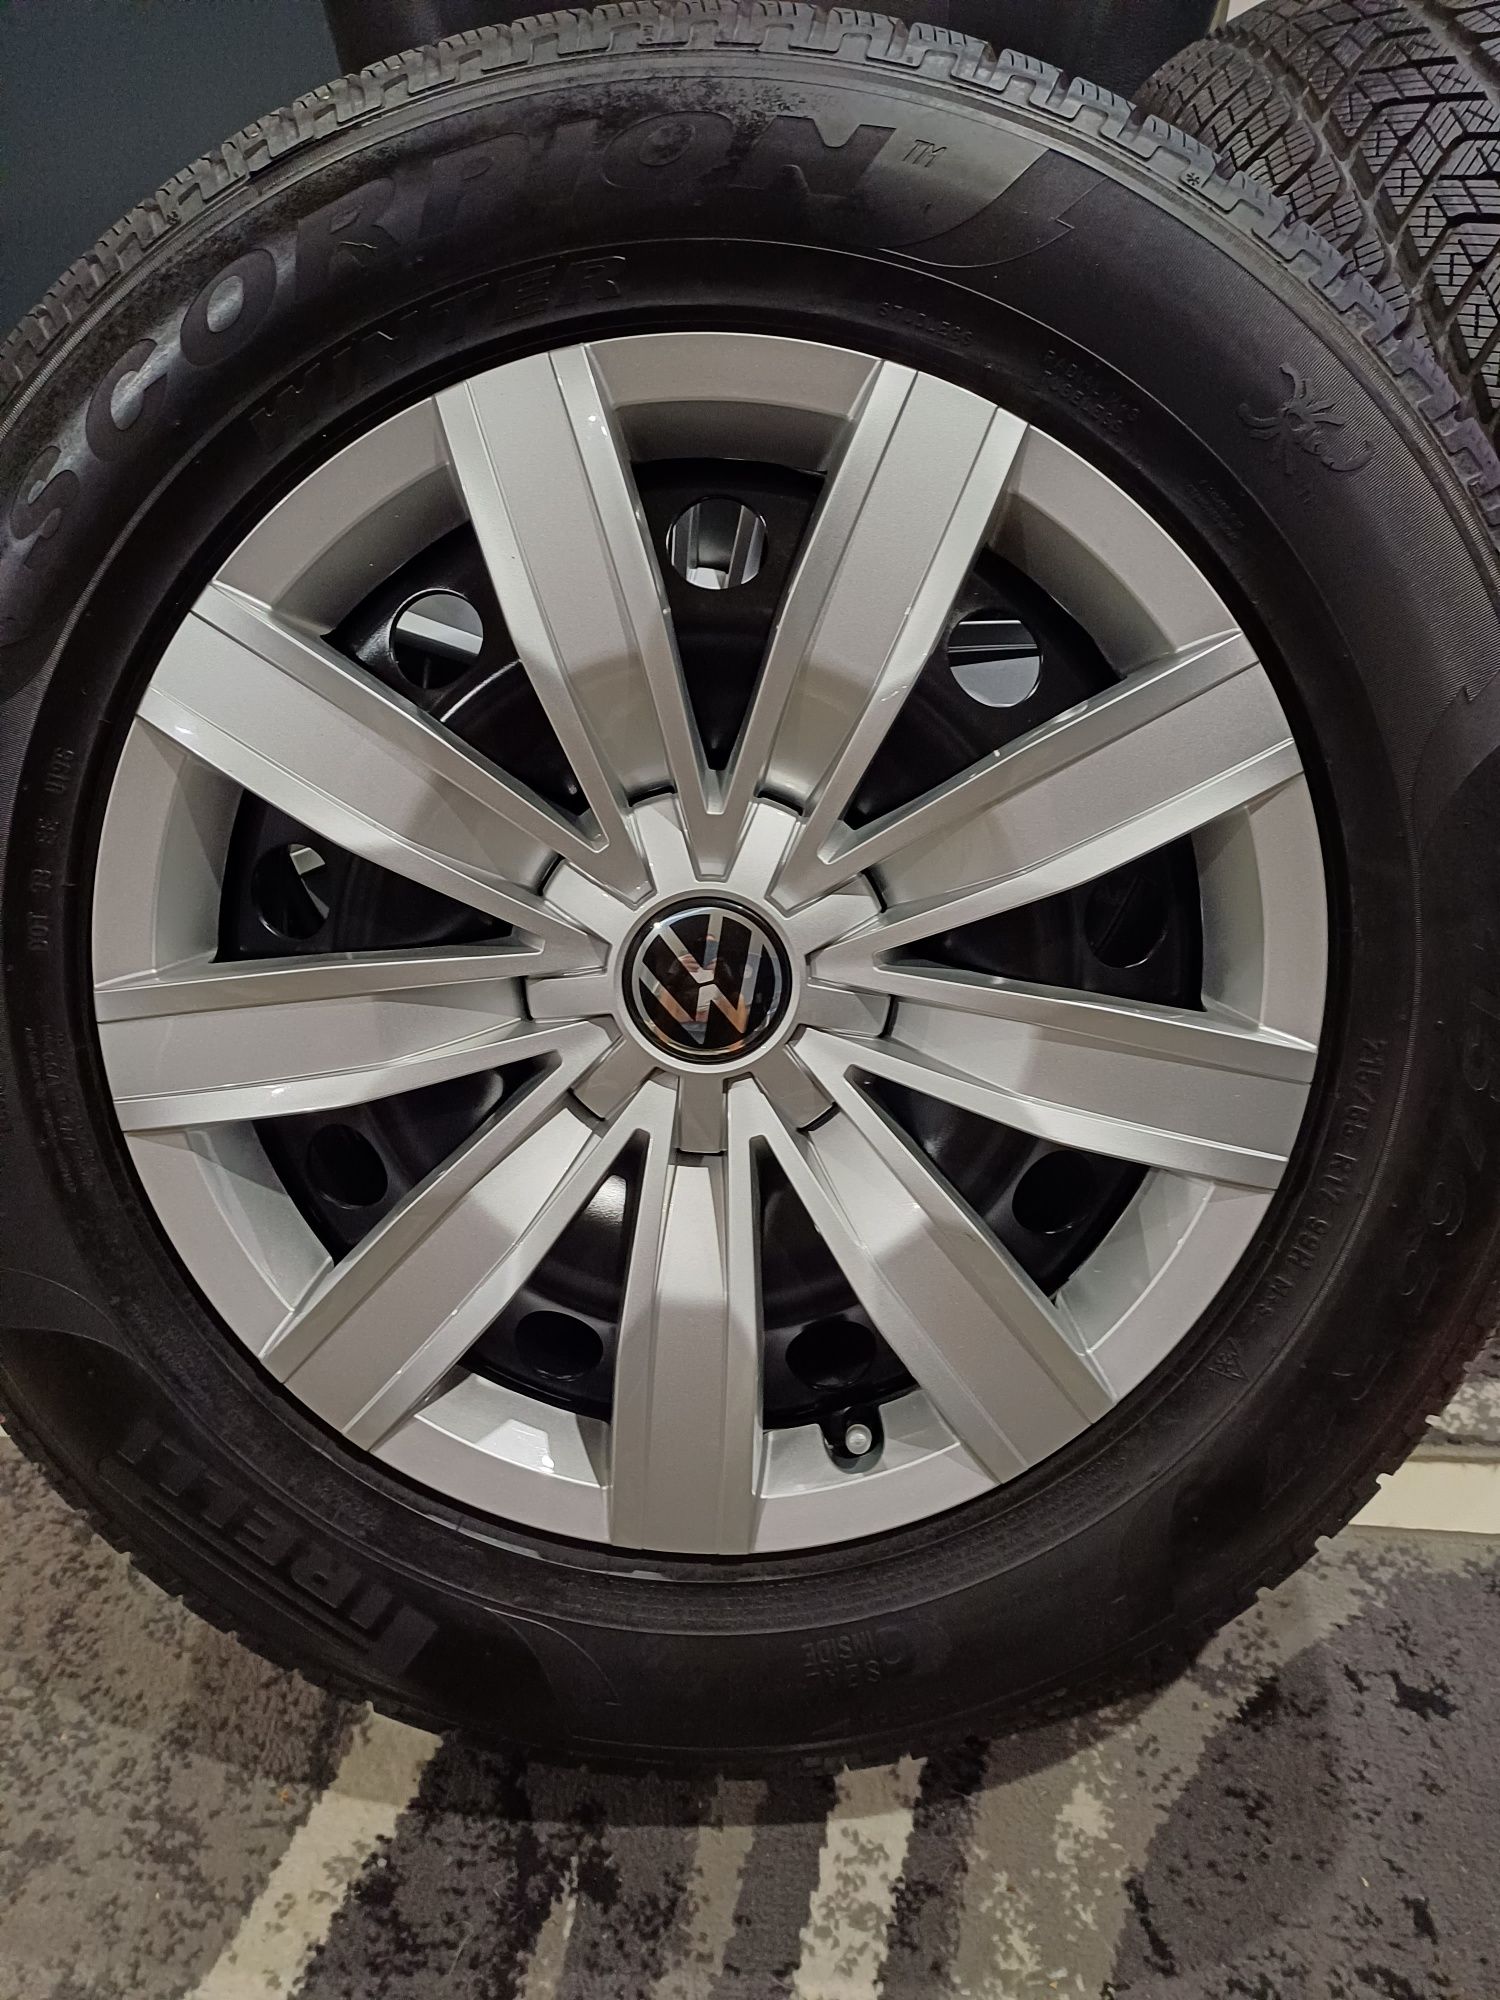 Koła zima,stal,idealne VW Tiguan nowy model 215/65/17 Pirelli. 2022rok